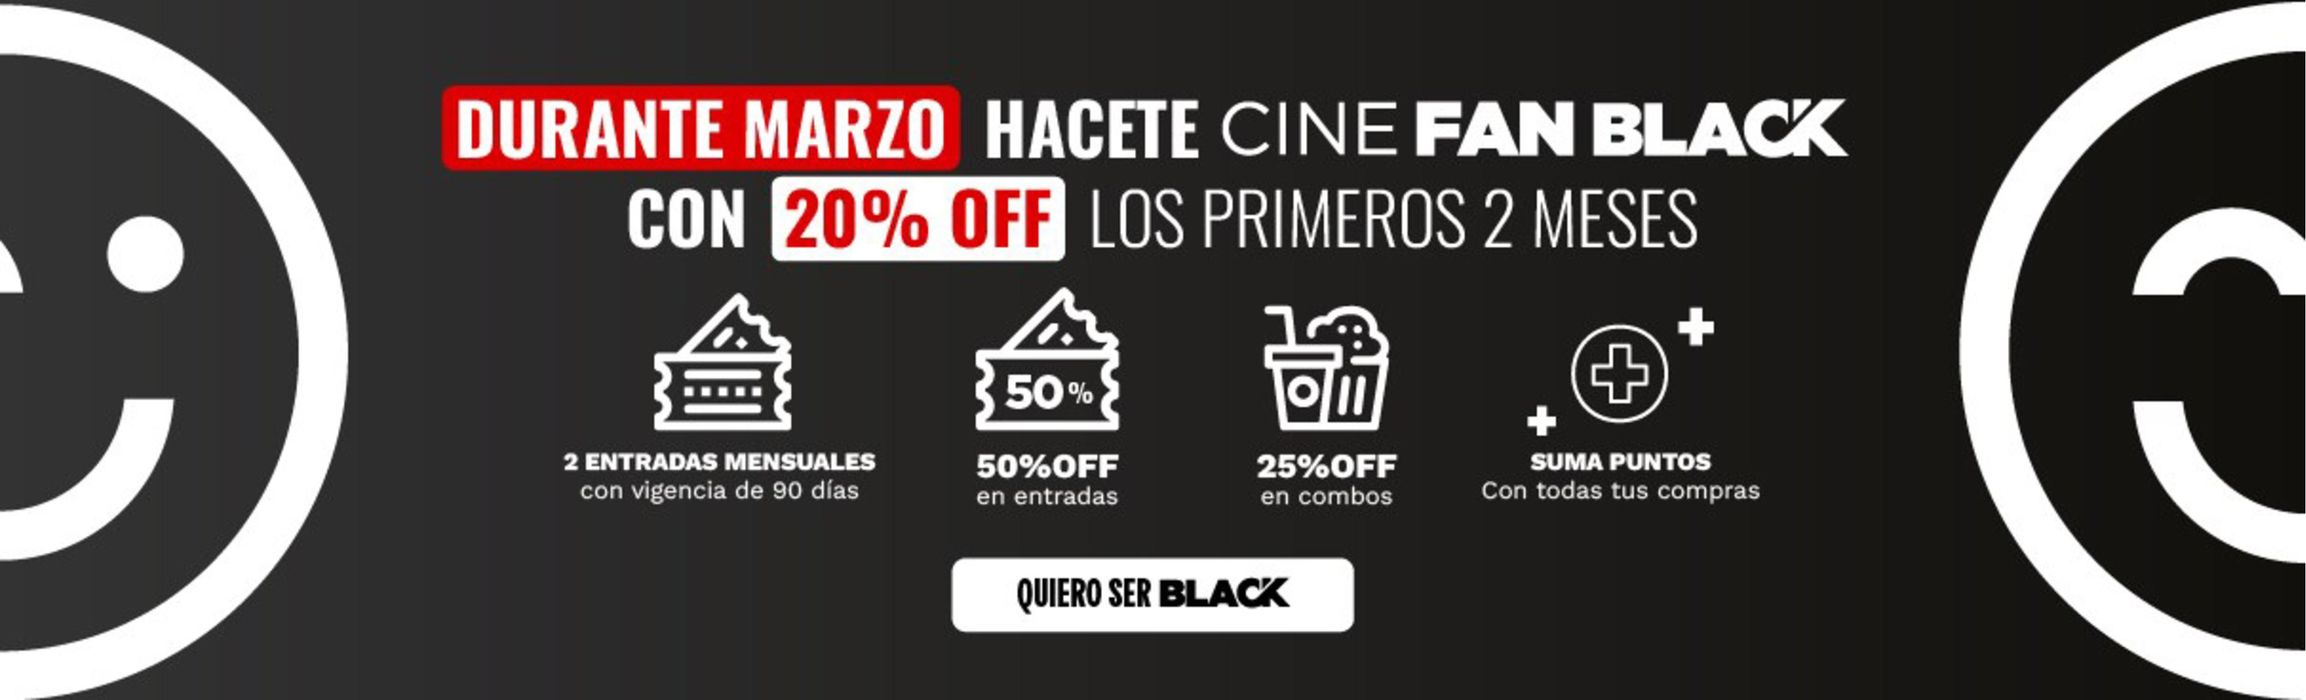 Catálogo Cinemark Hoyts en Morón | 50% off en entradas incluye todos los formatos | 21/3/2024 - 31/3/2024